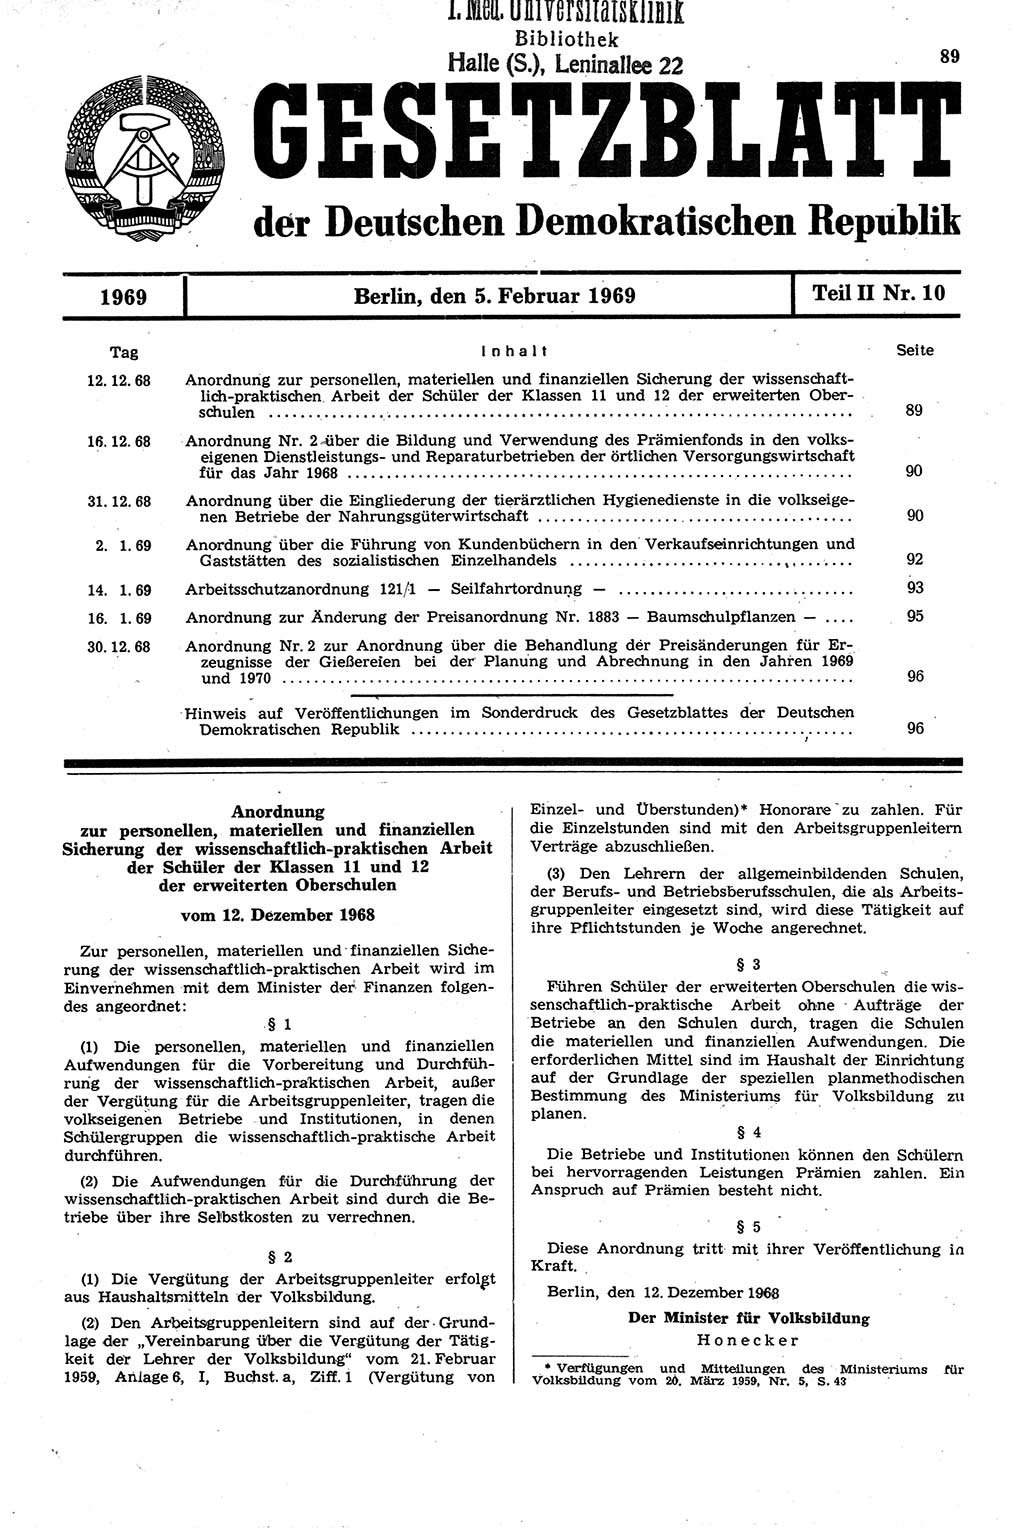 Gesetzblatt (GBl.) der Deutschen Demokratischen Republik (DDR) Teil ⅠⅠ 1969, Seite 89 (GBl. DDR ⅠⅠ 1969, S. 89)